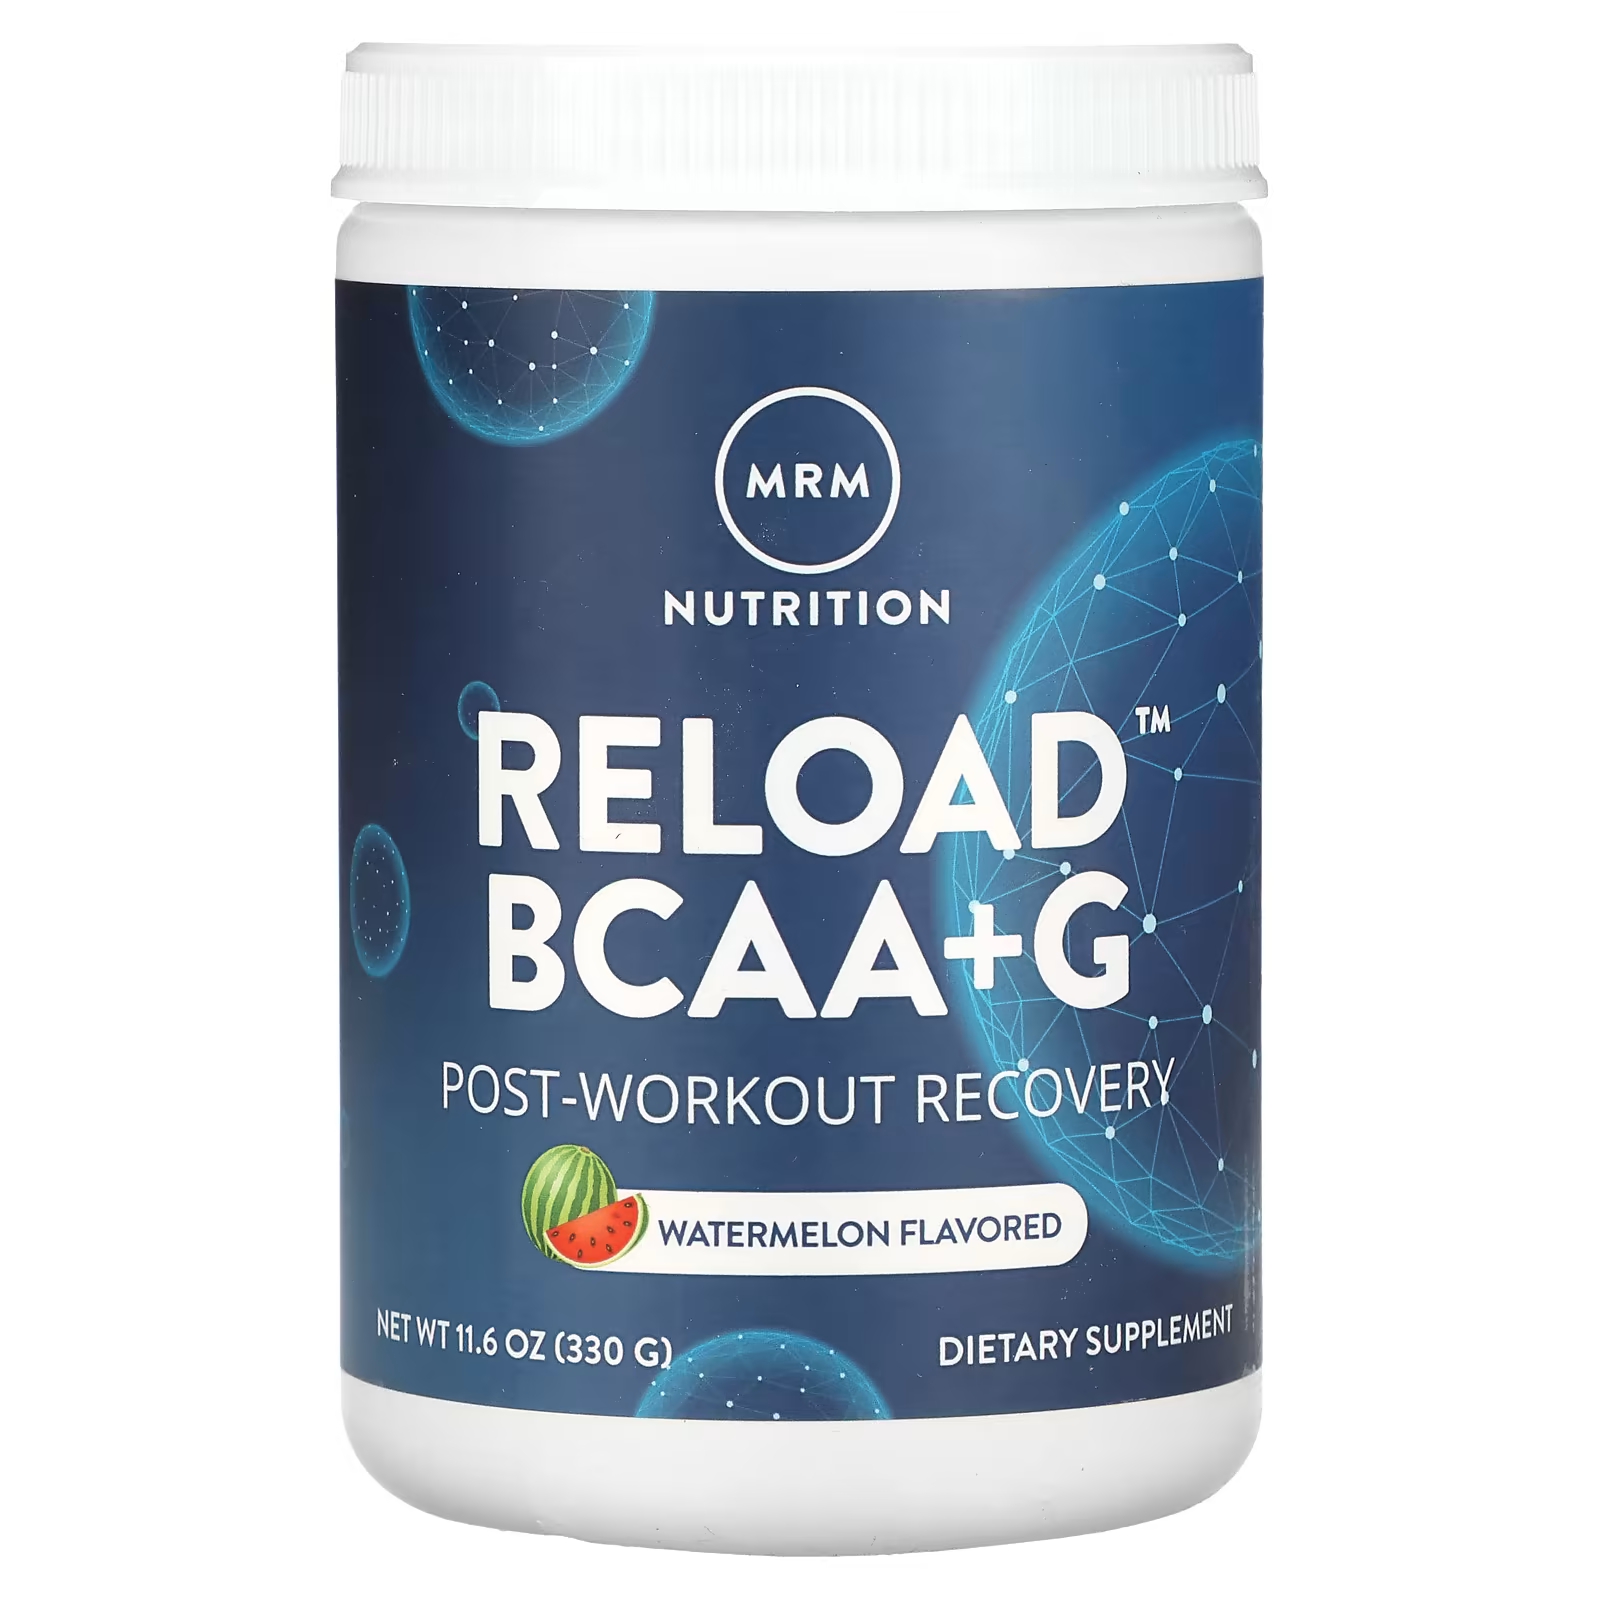 Пищевая добавка MRM Nutrition Reload BCAA+G для восстановления после тренировки, арбуз, 330 г